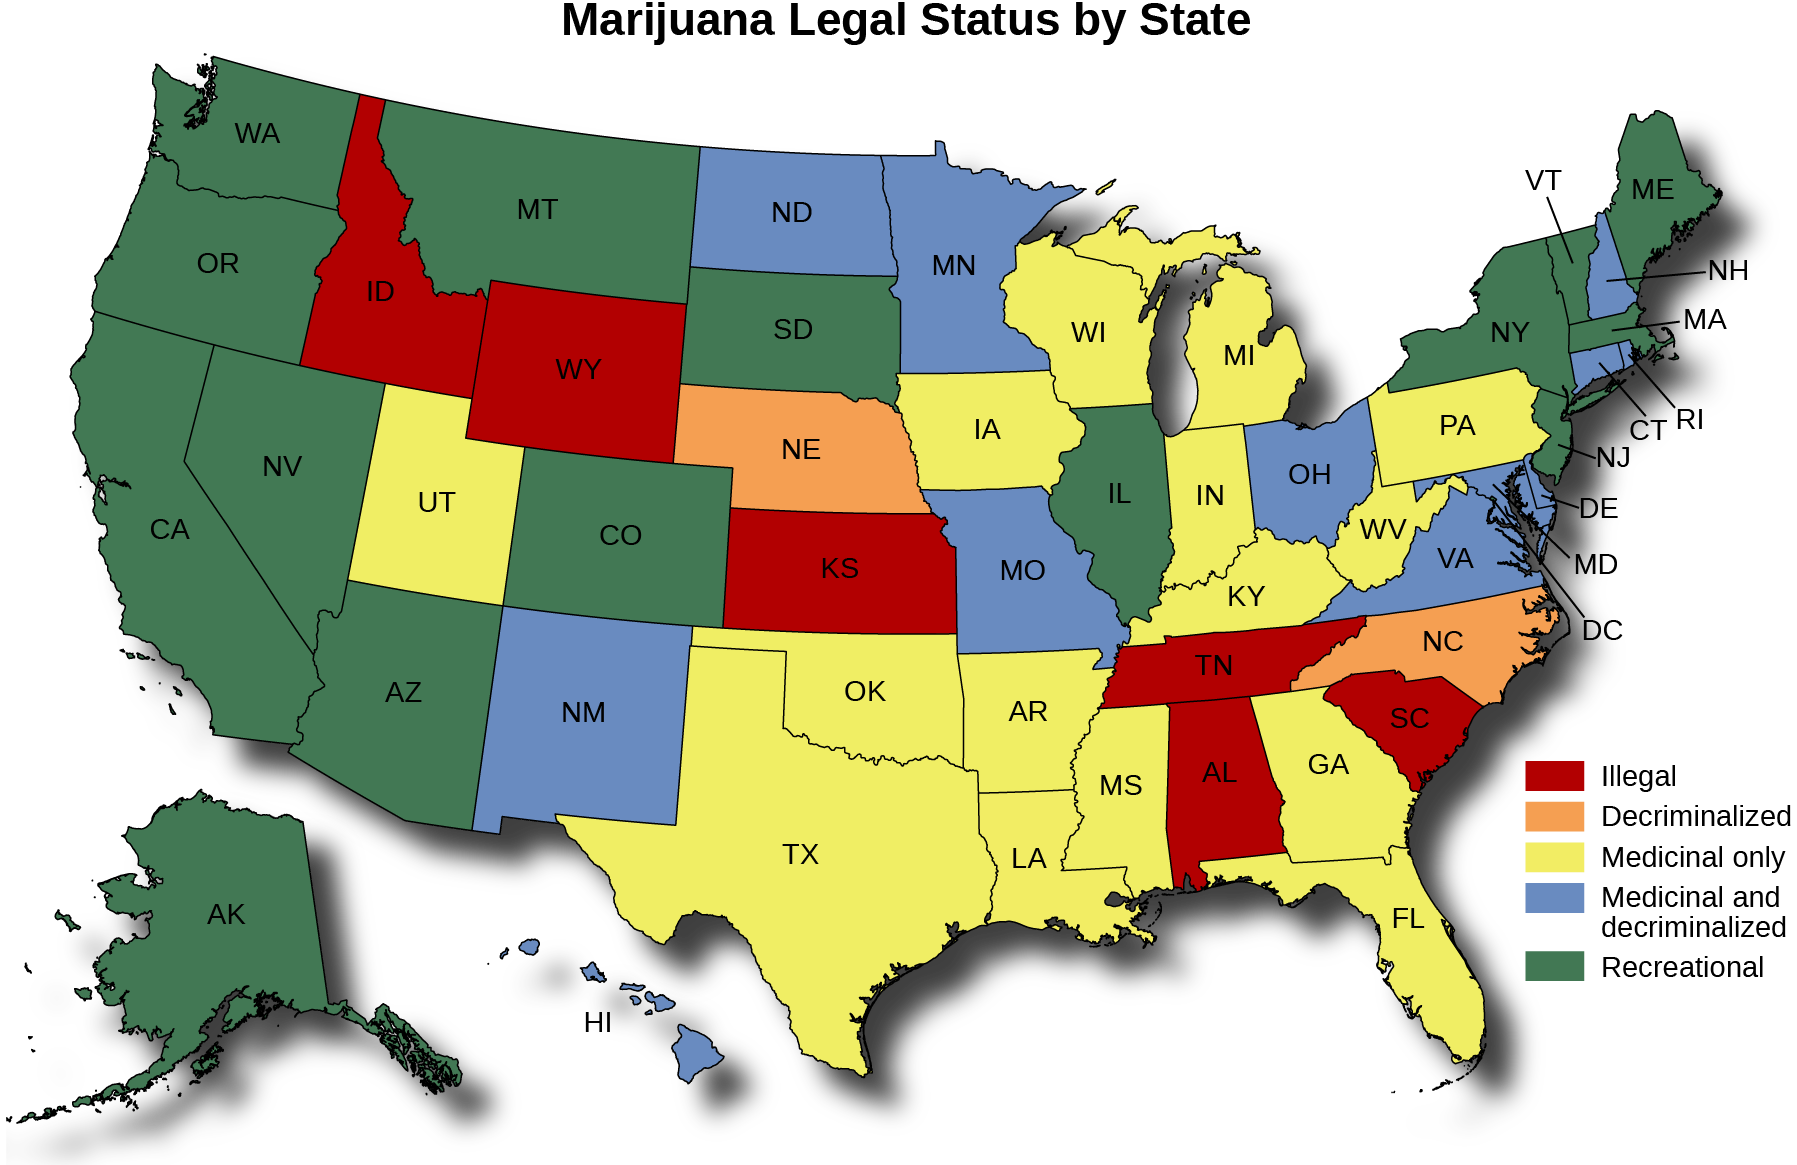 Une carte des États-Unis intitulée « Statut juridique de la marijuana par État ». La carte indique dans quels États la marijuana est illégale, décriminalisée, uniquement médicinale, médicinale et décriminalisée, et récréative. La marijuana est illégale dans l'Idaho, le Wyoming, le Dakota du Sud, le Kansas, le Texas, l'Iowa, le Wisconsin, l'Indiana, le Kentucky, le Tennessee, l'Alabama, la Géorgie, la Virginie et la Caroline du Sud. La marijuana est décriminalisée au Nebraska, au Mississippi et en Caroline du Nord. La marijuana n'est médicinale que dans le Montana, l'Utah, l'Arizona, le Nouveau-Mexique, le Dakota du Nord, l'Oklahoma, l'Arkansas, la Louisiane, la Floride, la Virginie occidentale, la Pennsylvanie et le New Jersey. La marijuana est médicinale et décriminalisée au Minnesota, au Missouri, en Illinois, en Ohio, à New York, au Delaware, au Maryland, dans le district de Columbia, au New Hampshire, au Connecticut et au Rhode Island. La marijuana est récréative à Washington, en Oregon, en Californie, au Nevada, en Alaska, au Colorado, au Michigan, au Vermont, au Maine et au Massachusetts.